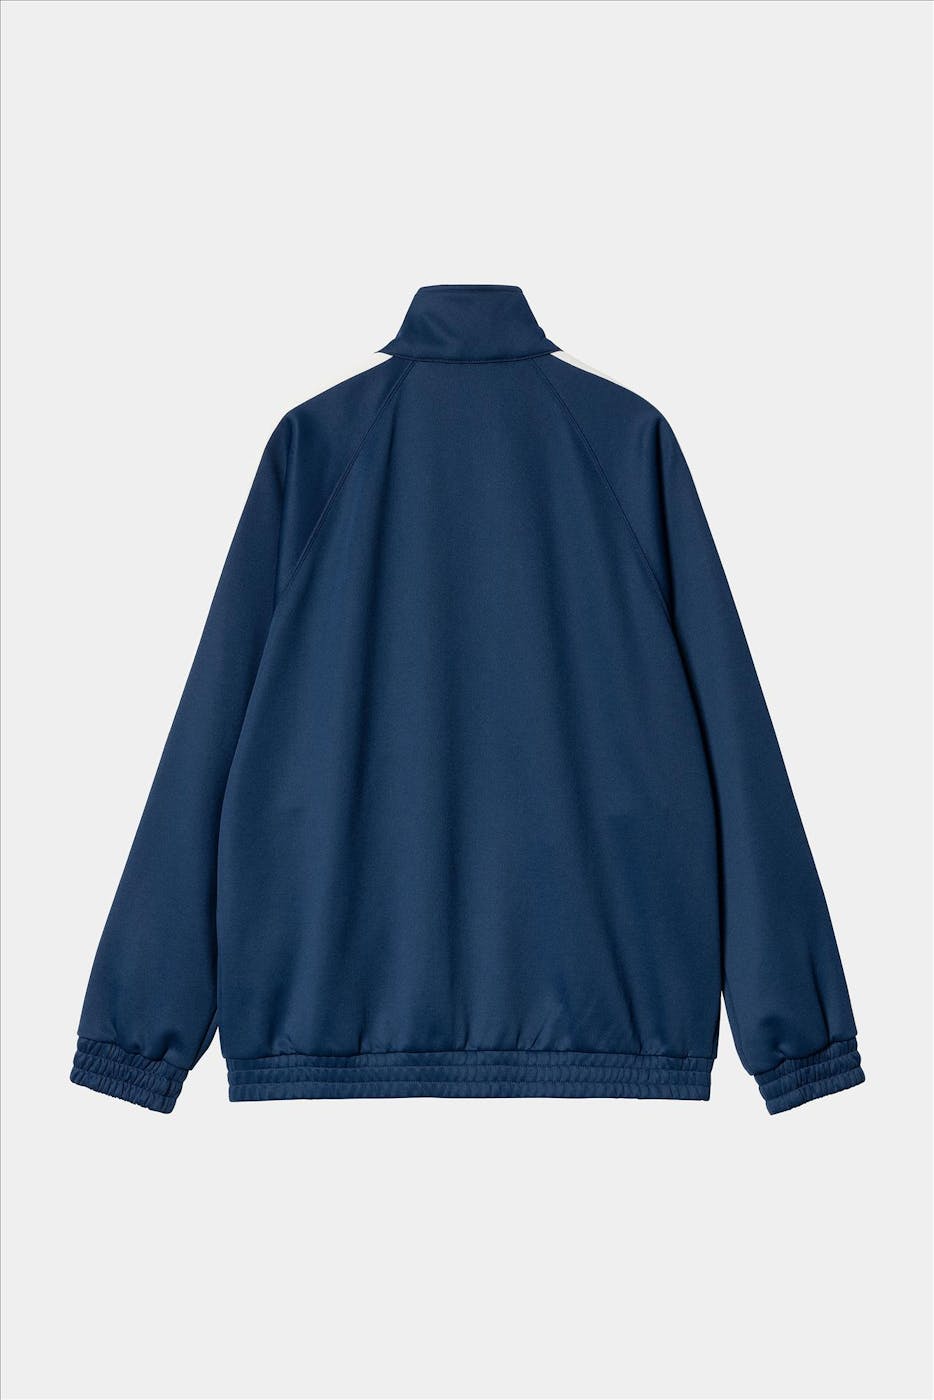 Carhartt WIP - Donkerblauwe Benchill jas